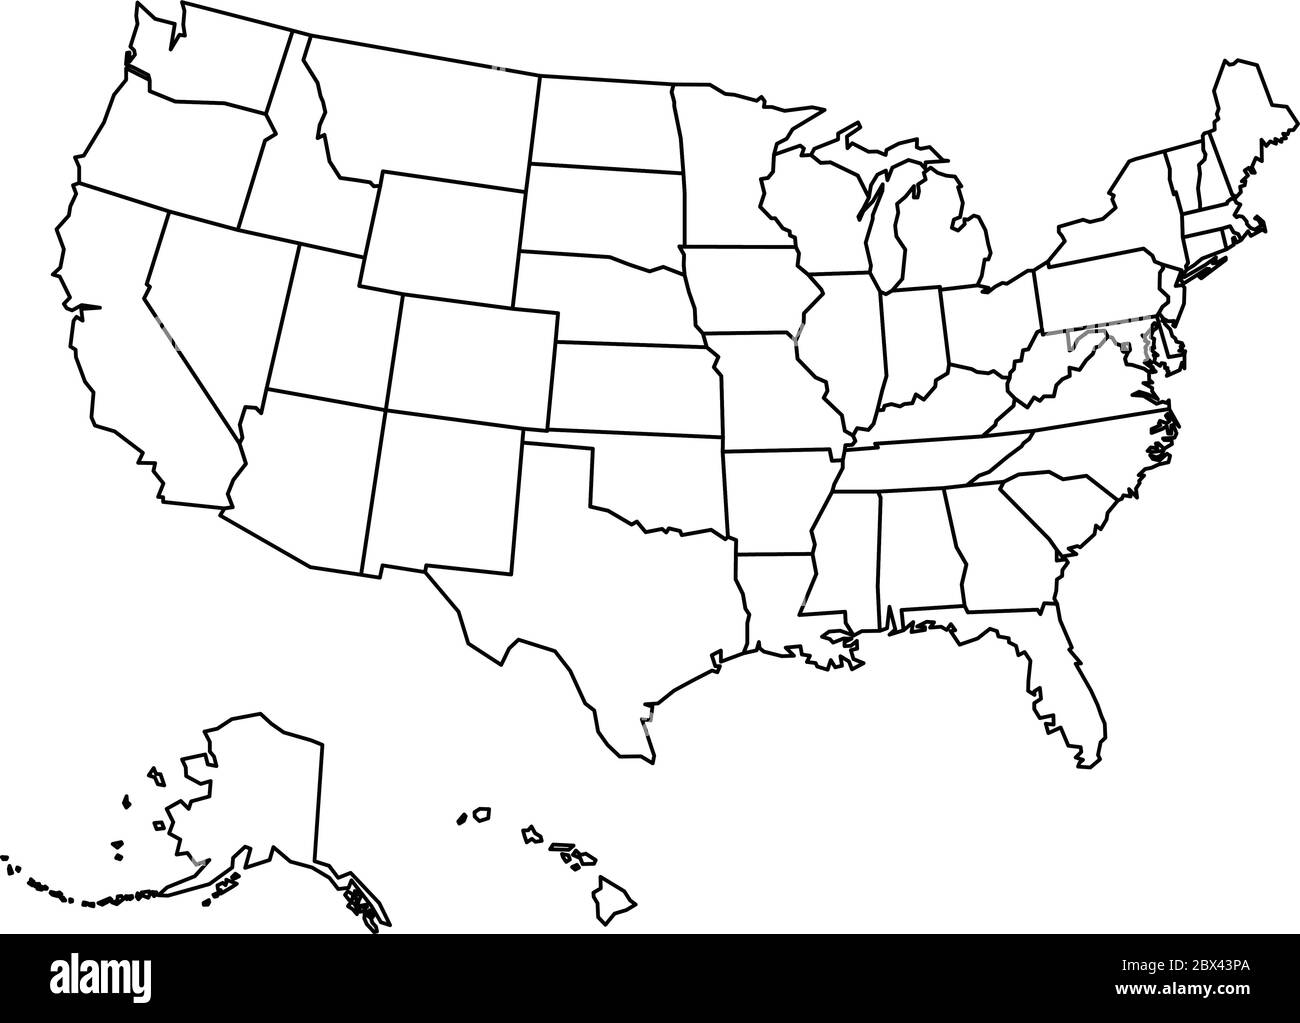 Mappa degli Stati Uniti d'America vuota. Mappa vettoriale semplificata con contorni neri spessi su sfondo bianco. Illustrazione Vettoriale